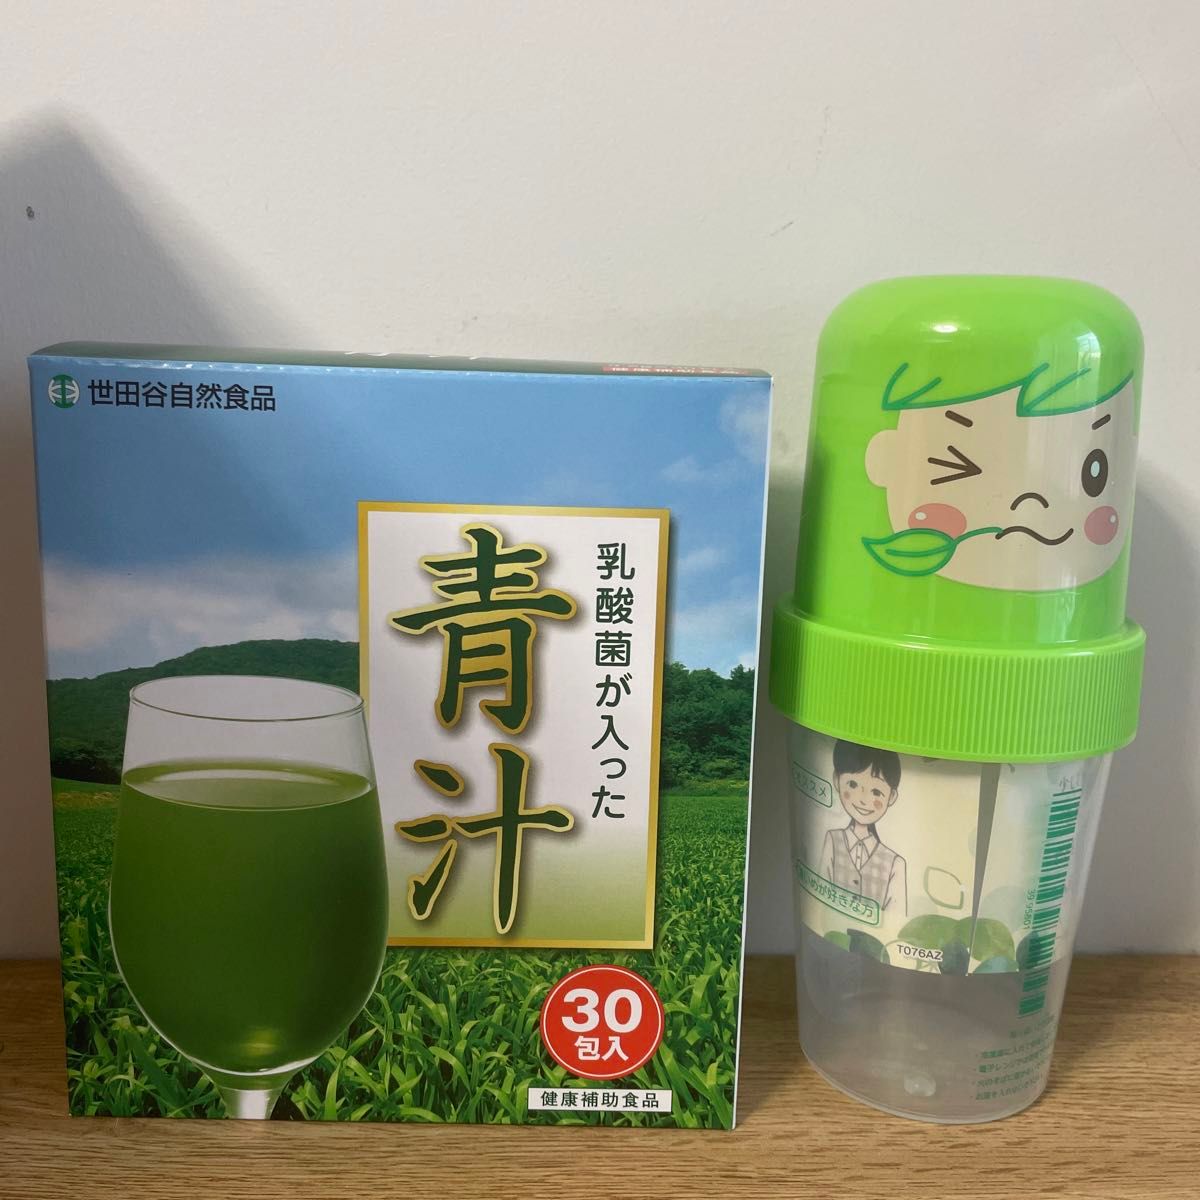 世田谷自然食品 乳酸菌入り青汁30包×6箱 シェイカー付き 賞味期限2025.01